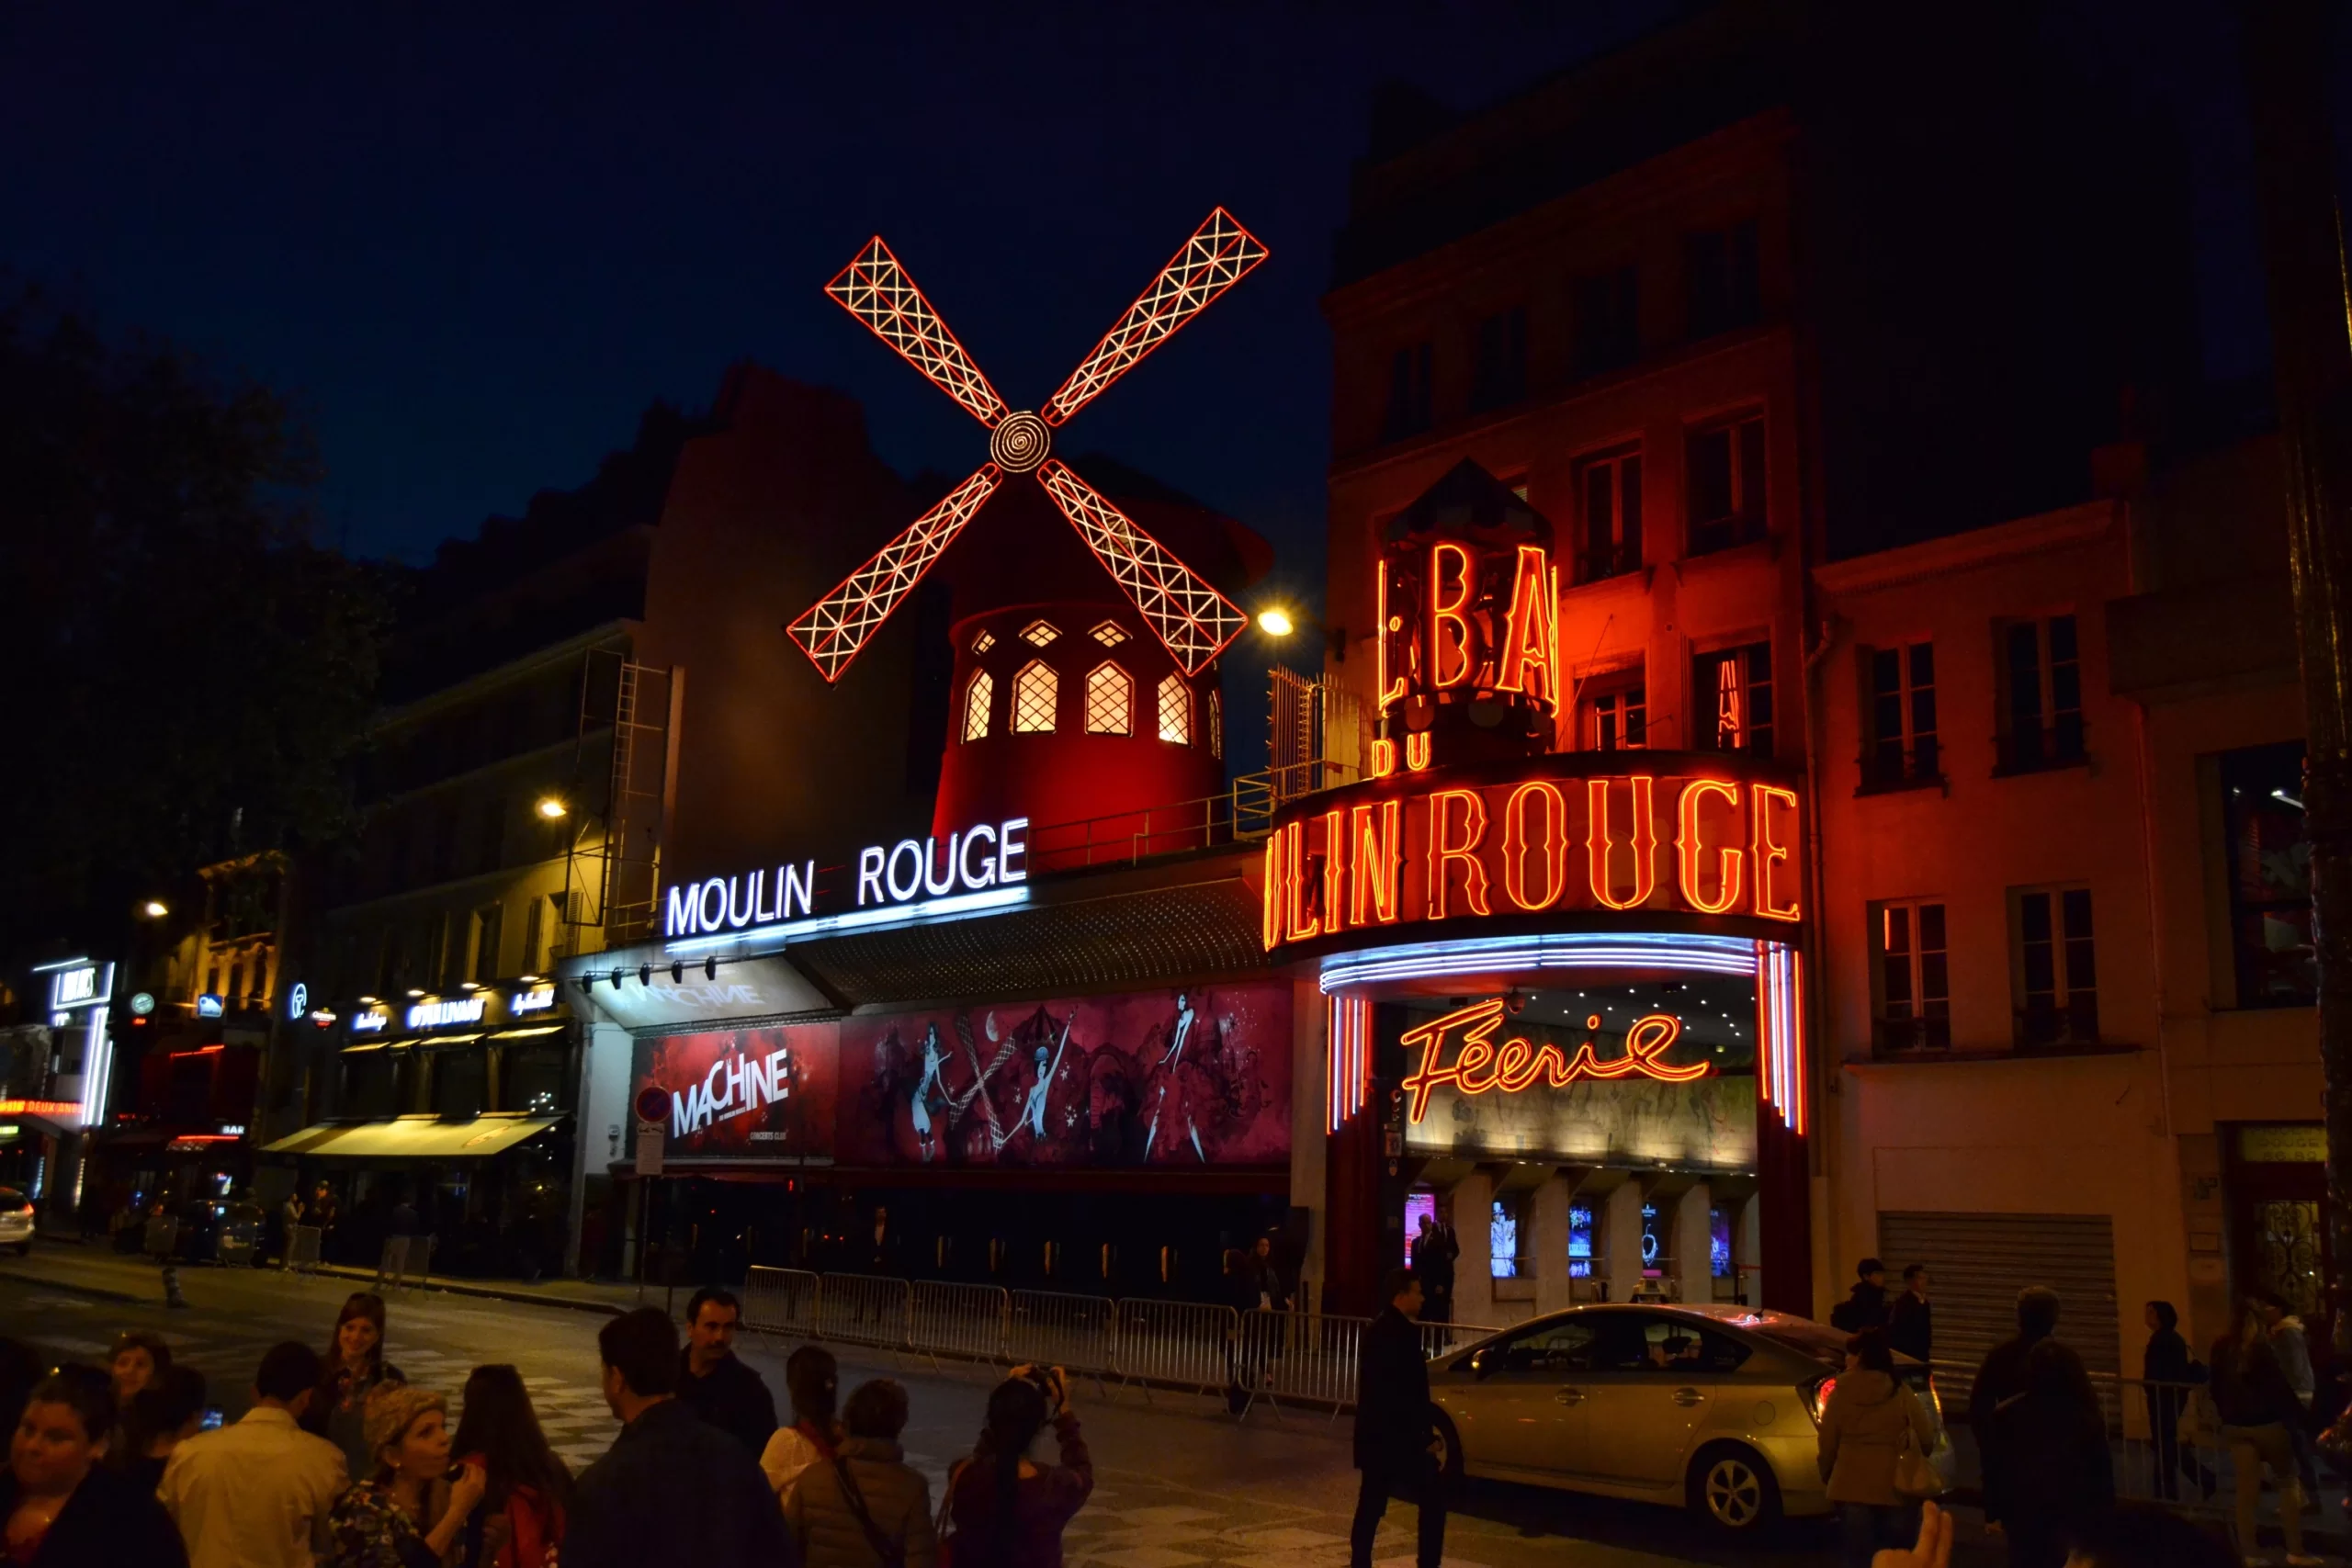 Występ i bilety do Moulin Rouge  : wszystko o Paryżu